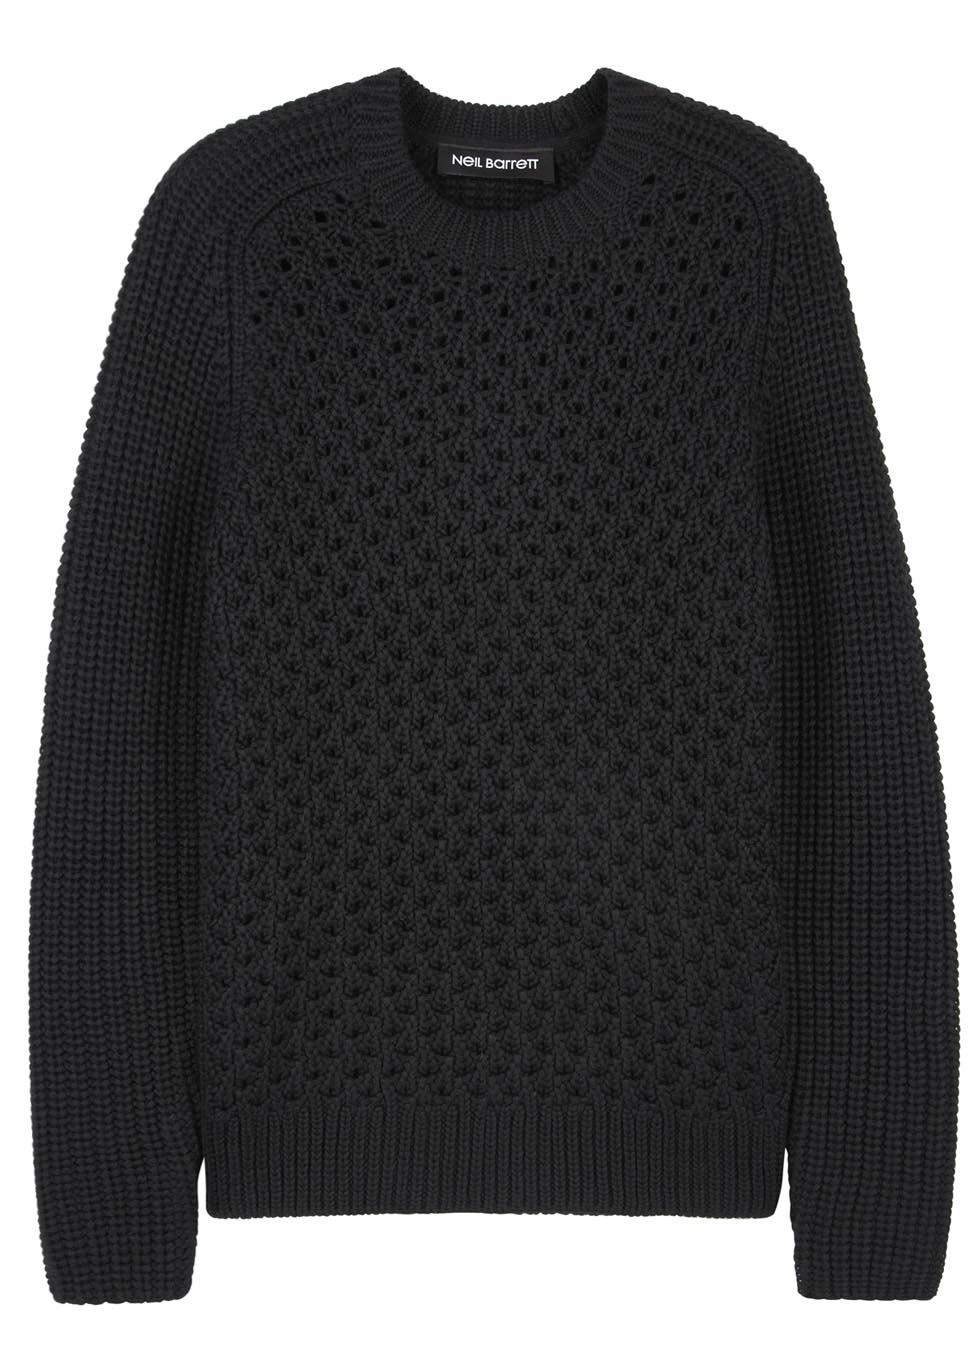 Black open knit wool blend jumper